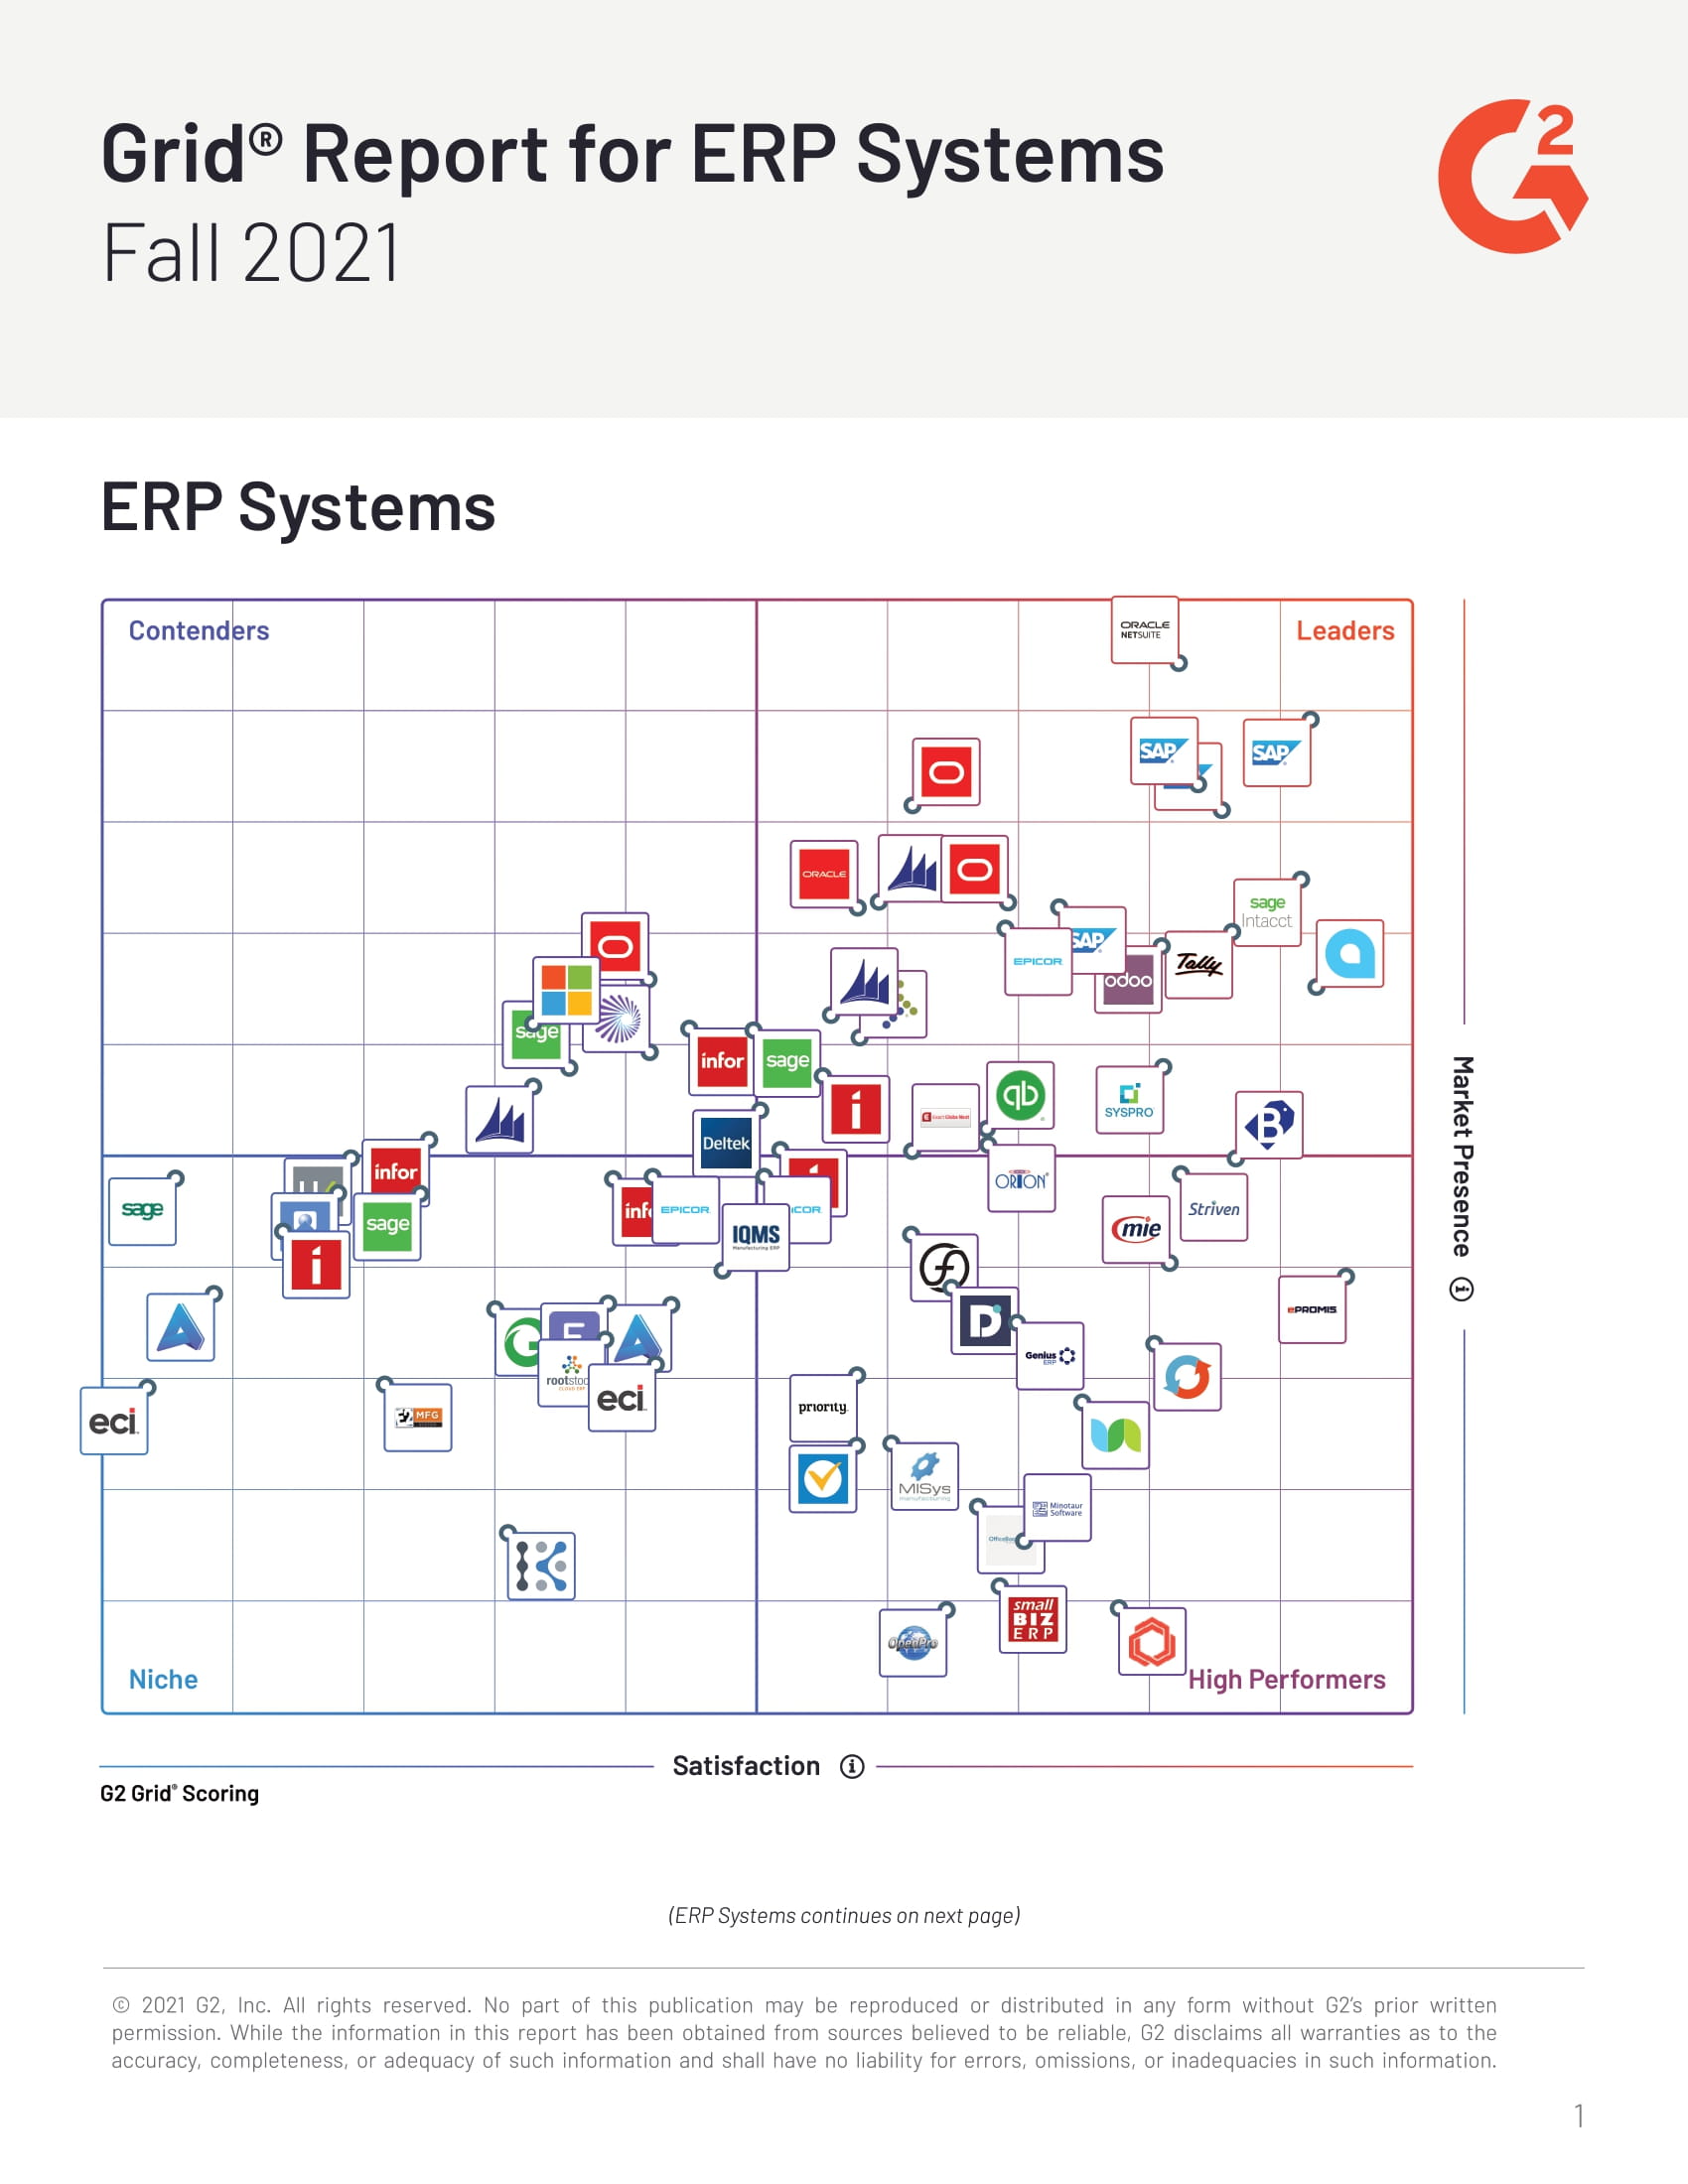 Get ERP Software Ratings for 67 Popular Platforms